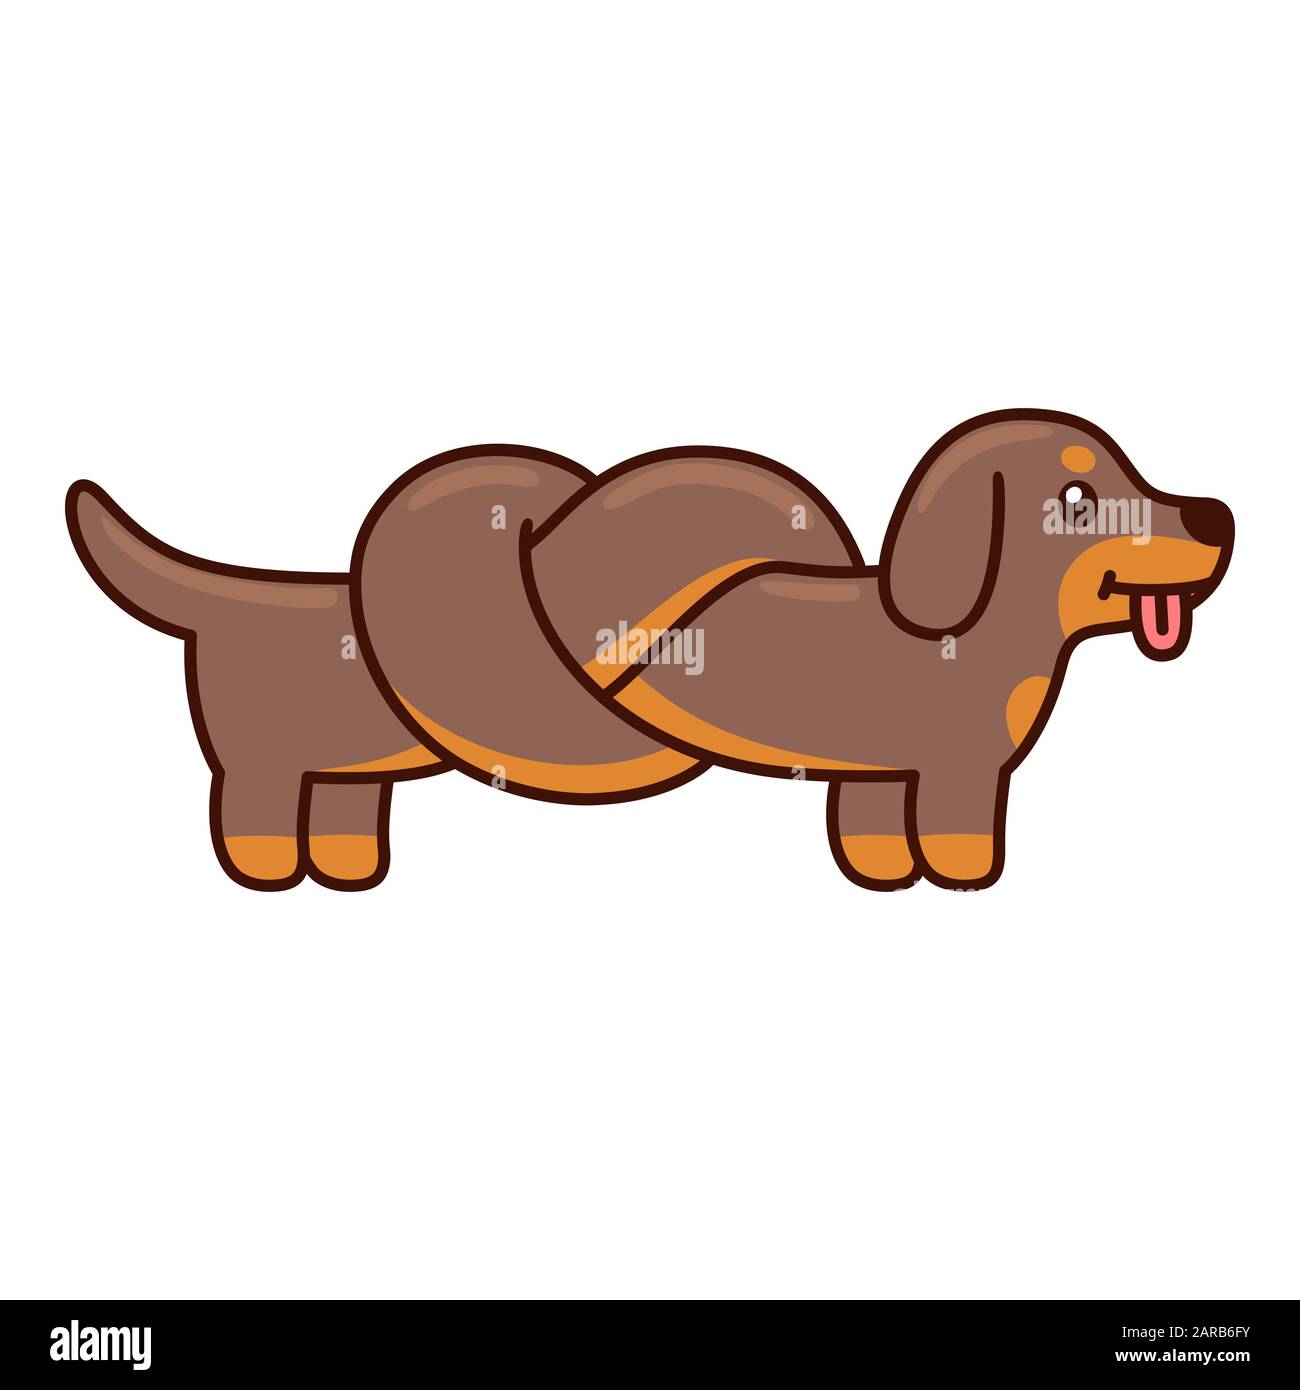 Mignon dessin animé dachshund avec le corps attaché dans le nœud, drôle long wiener chien doodle. Illustration vectorielle isolée. Illustration de Vecteur